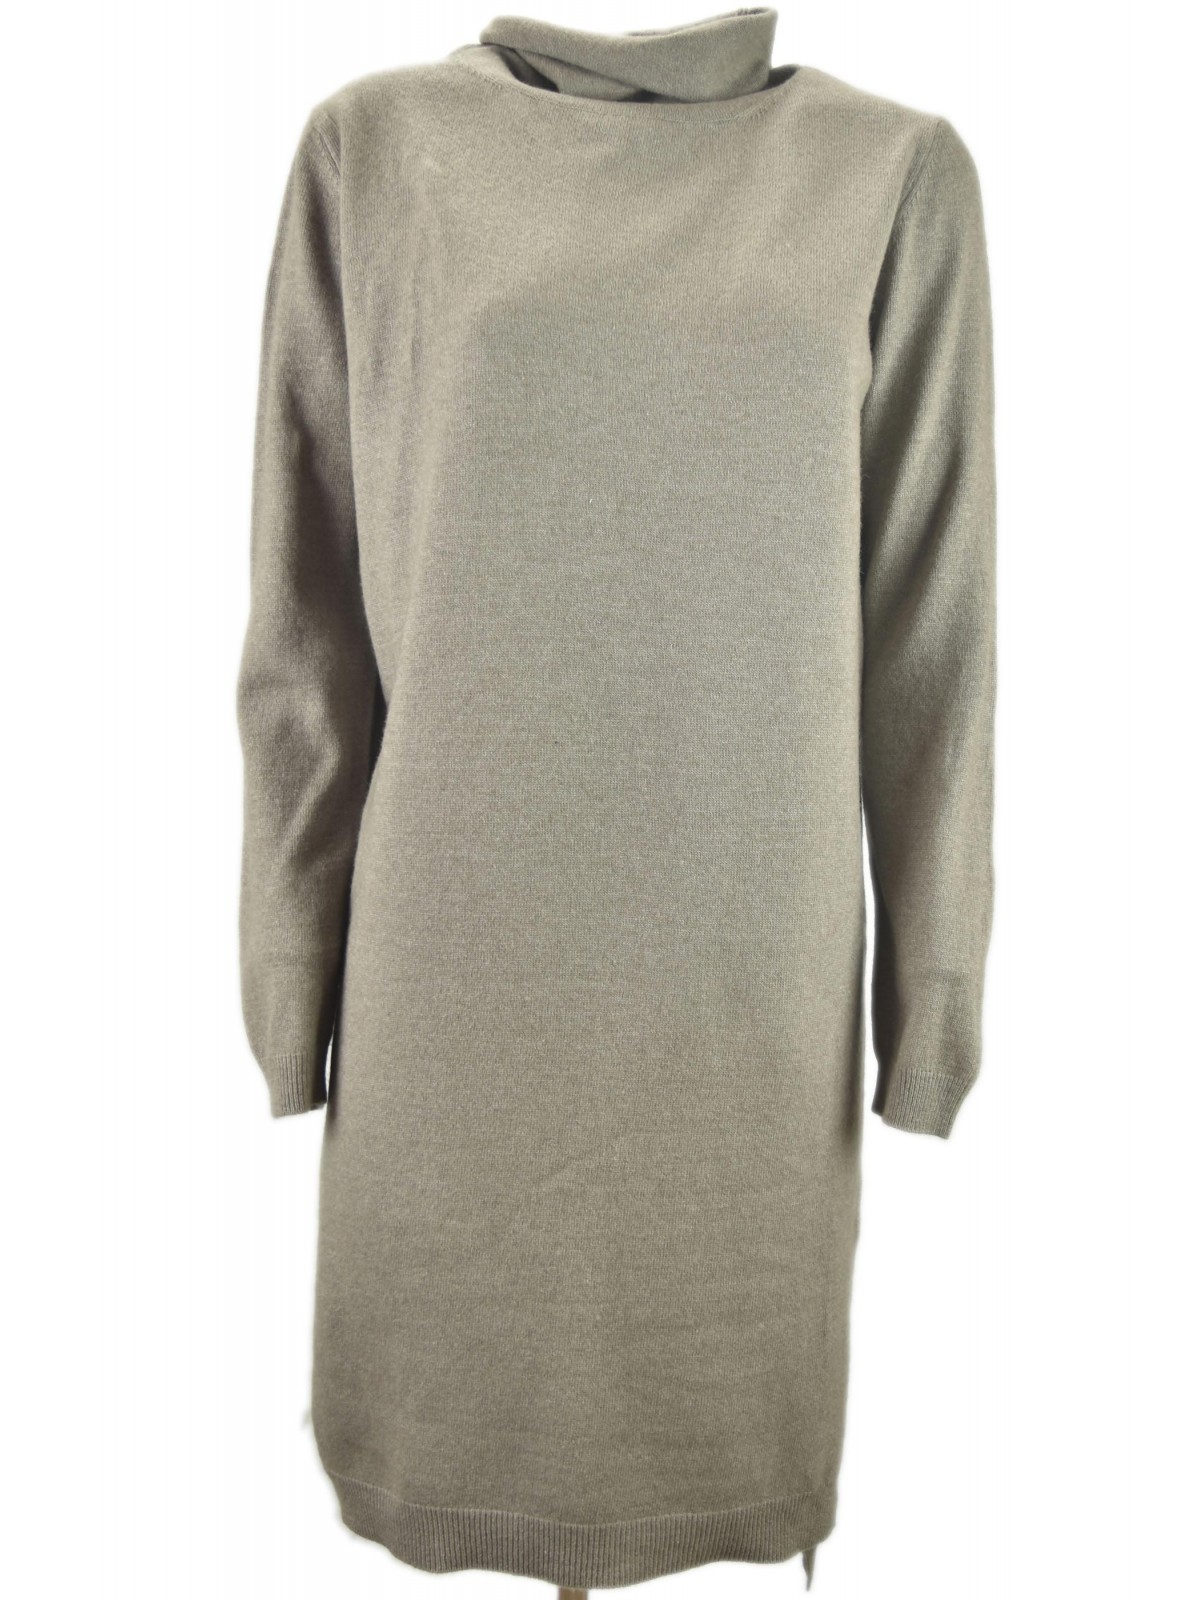 Kleid Woman Sweater Neck Ring Patches an den Ellbogen